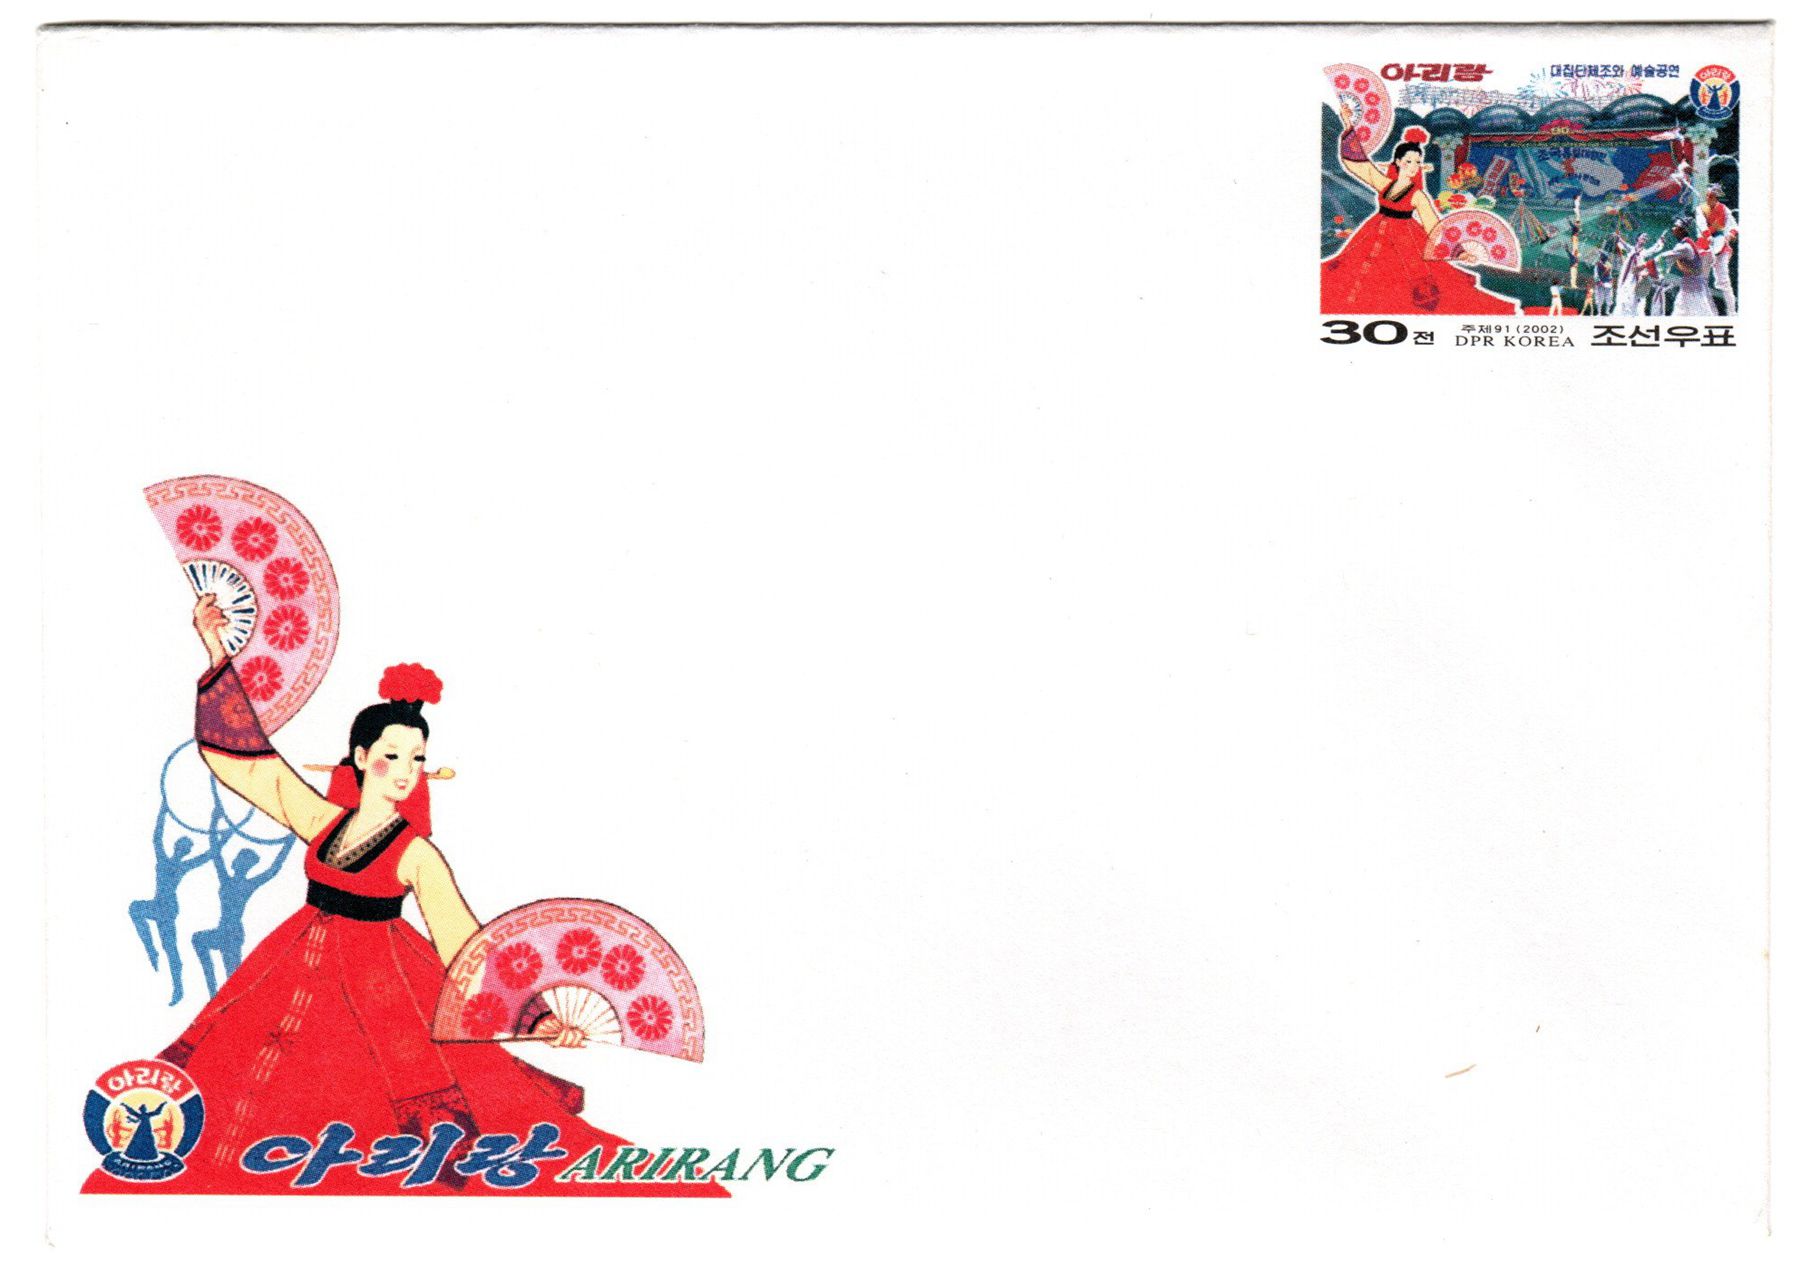 L9805, Korea "Arirang Mass Gymnastics" Postal Entires Envelope, 2002